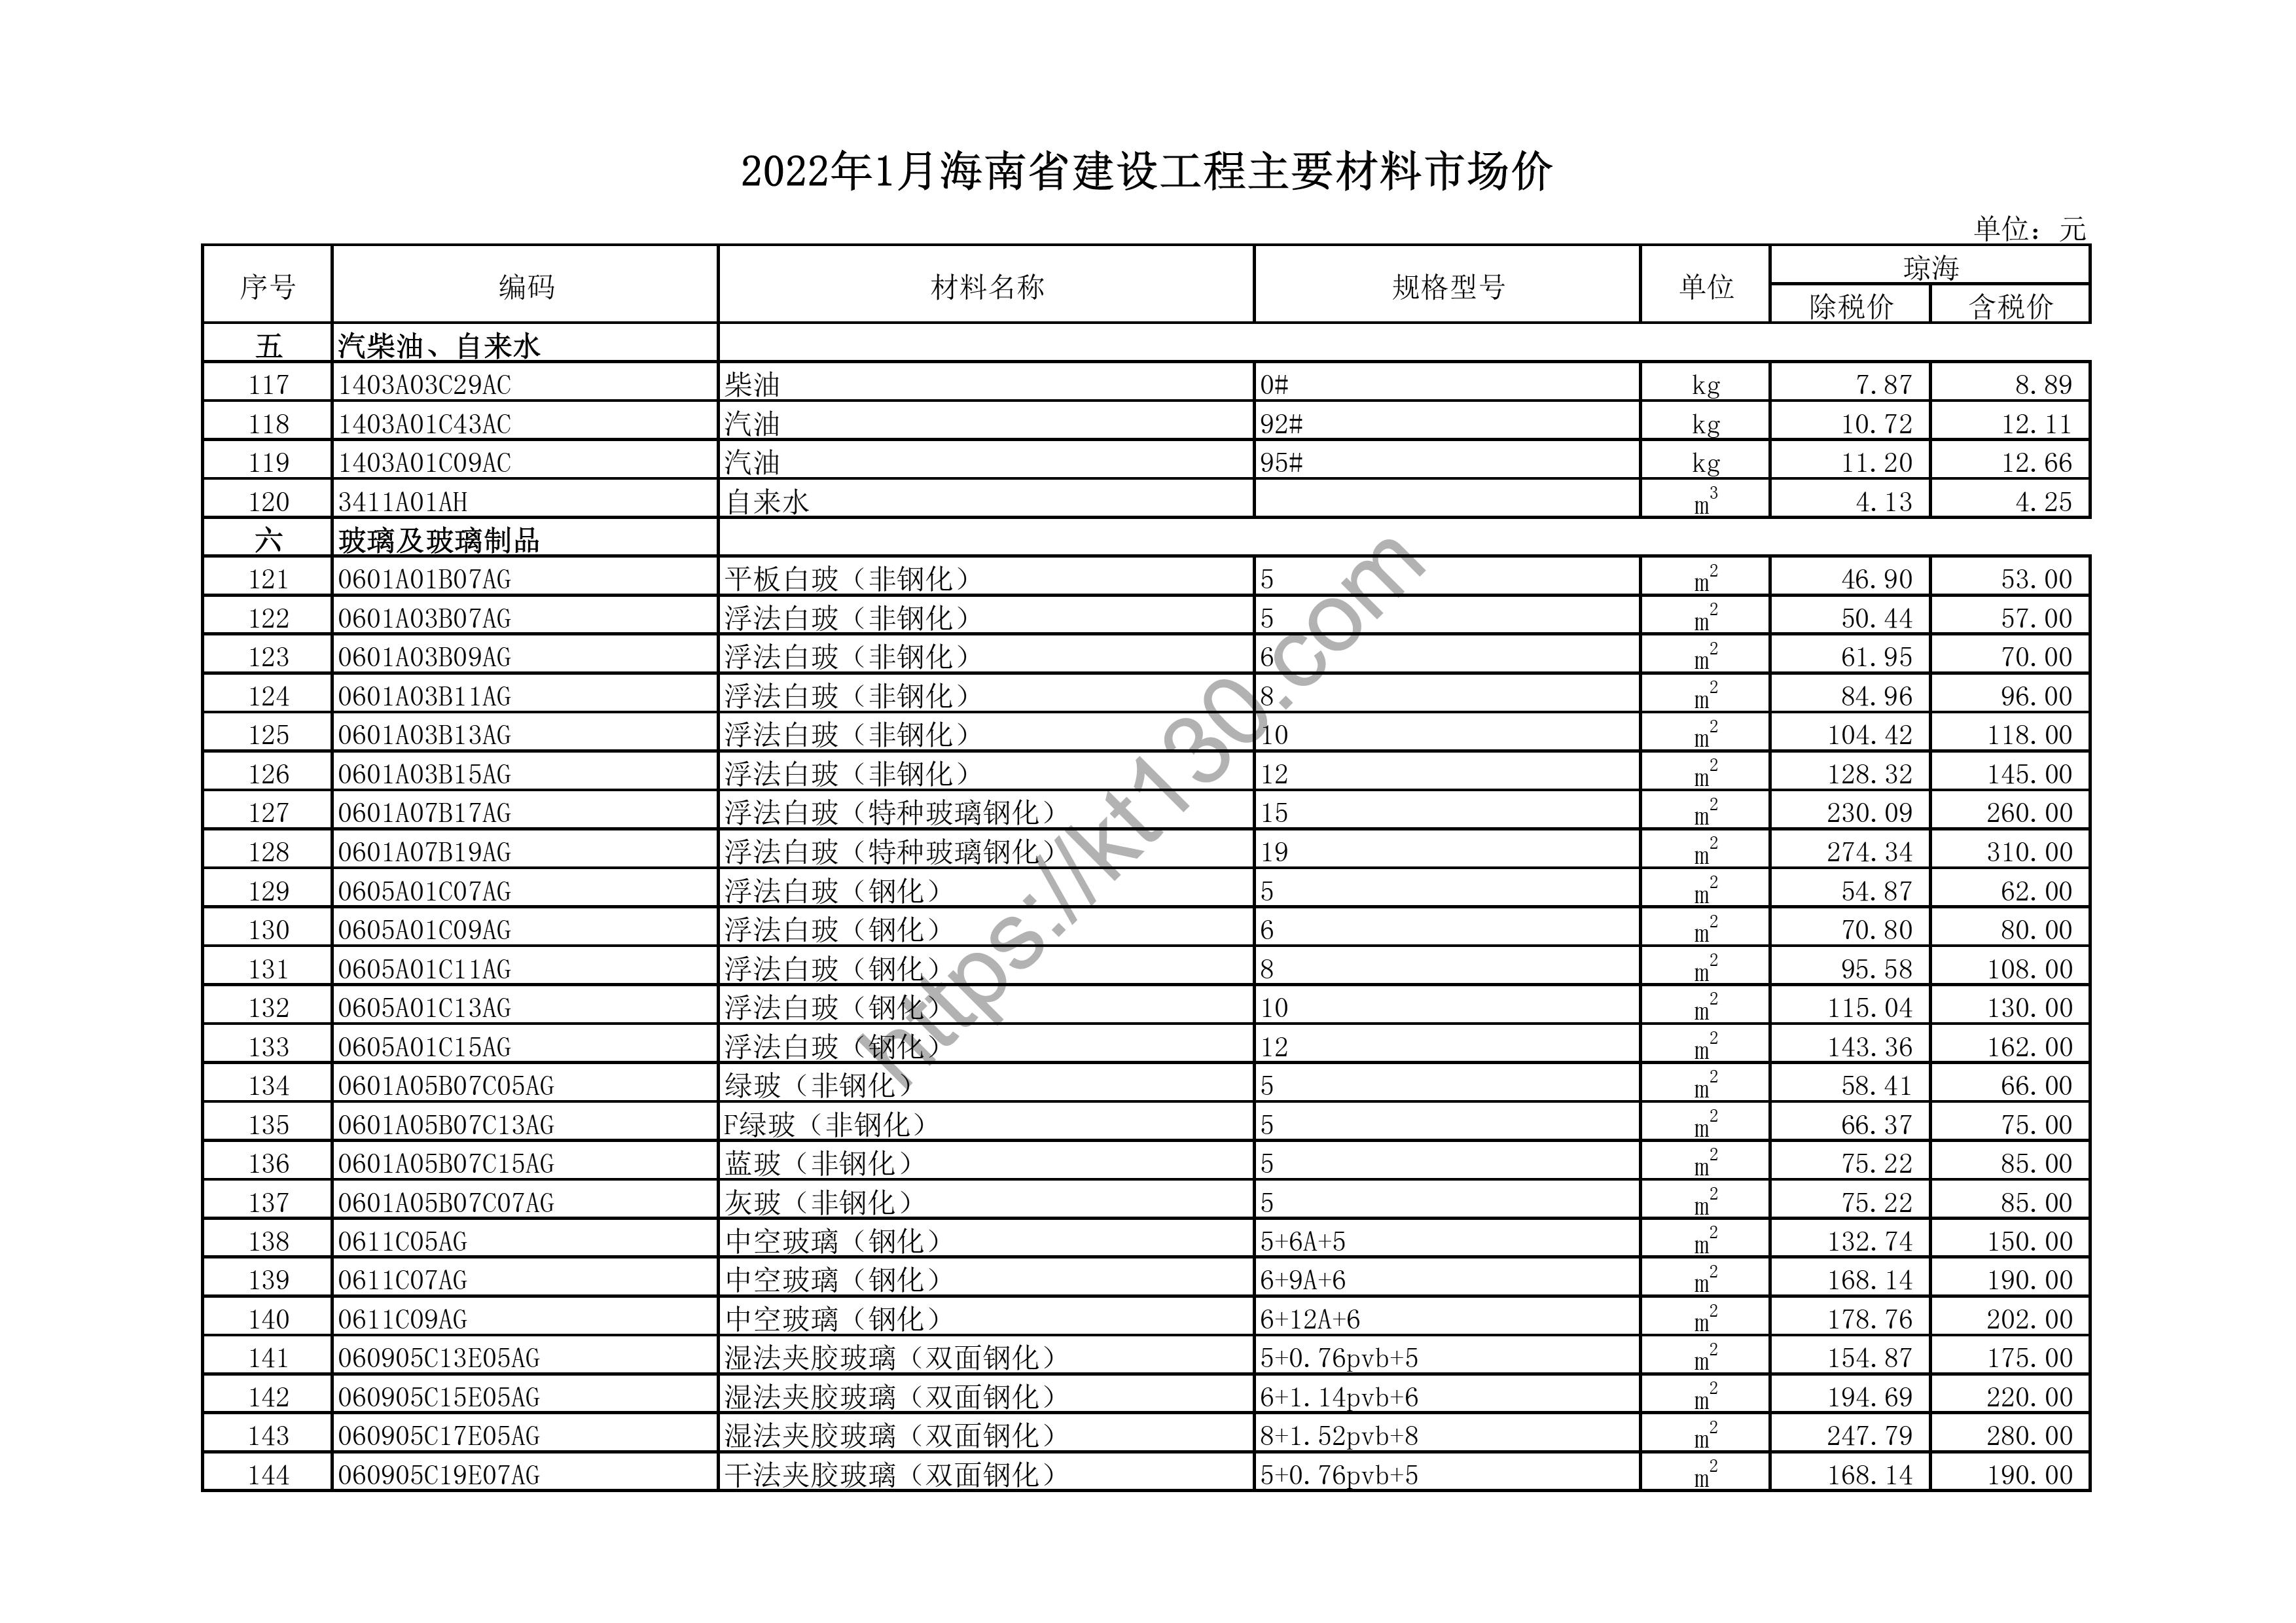 海南省2022年1月建筑材料价_平板白玻璃_43653